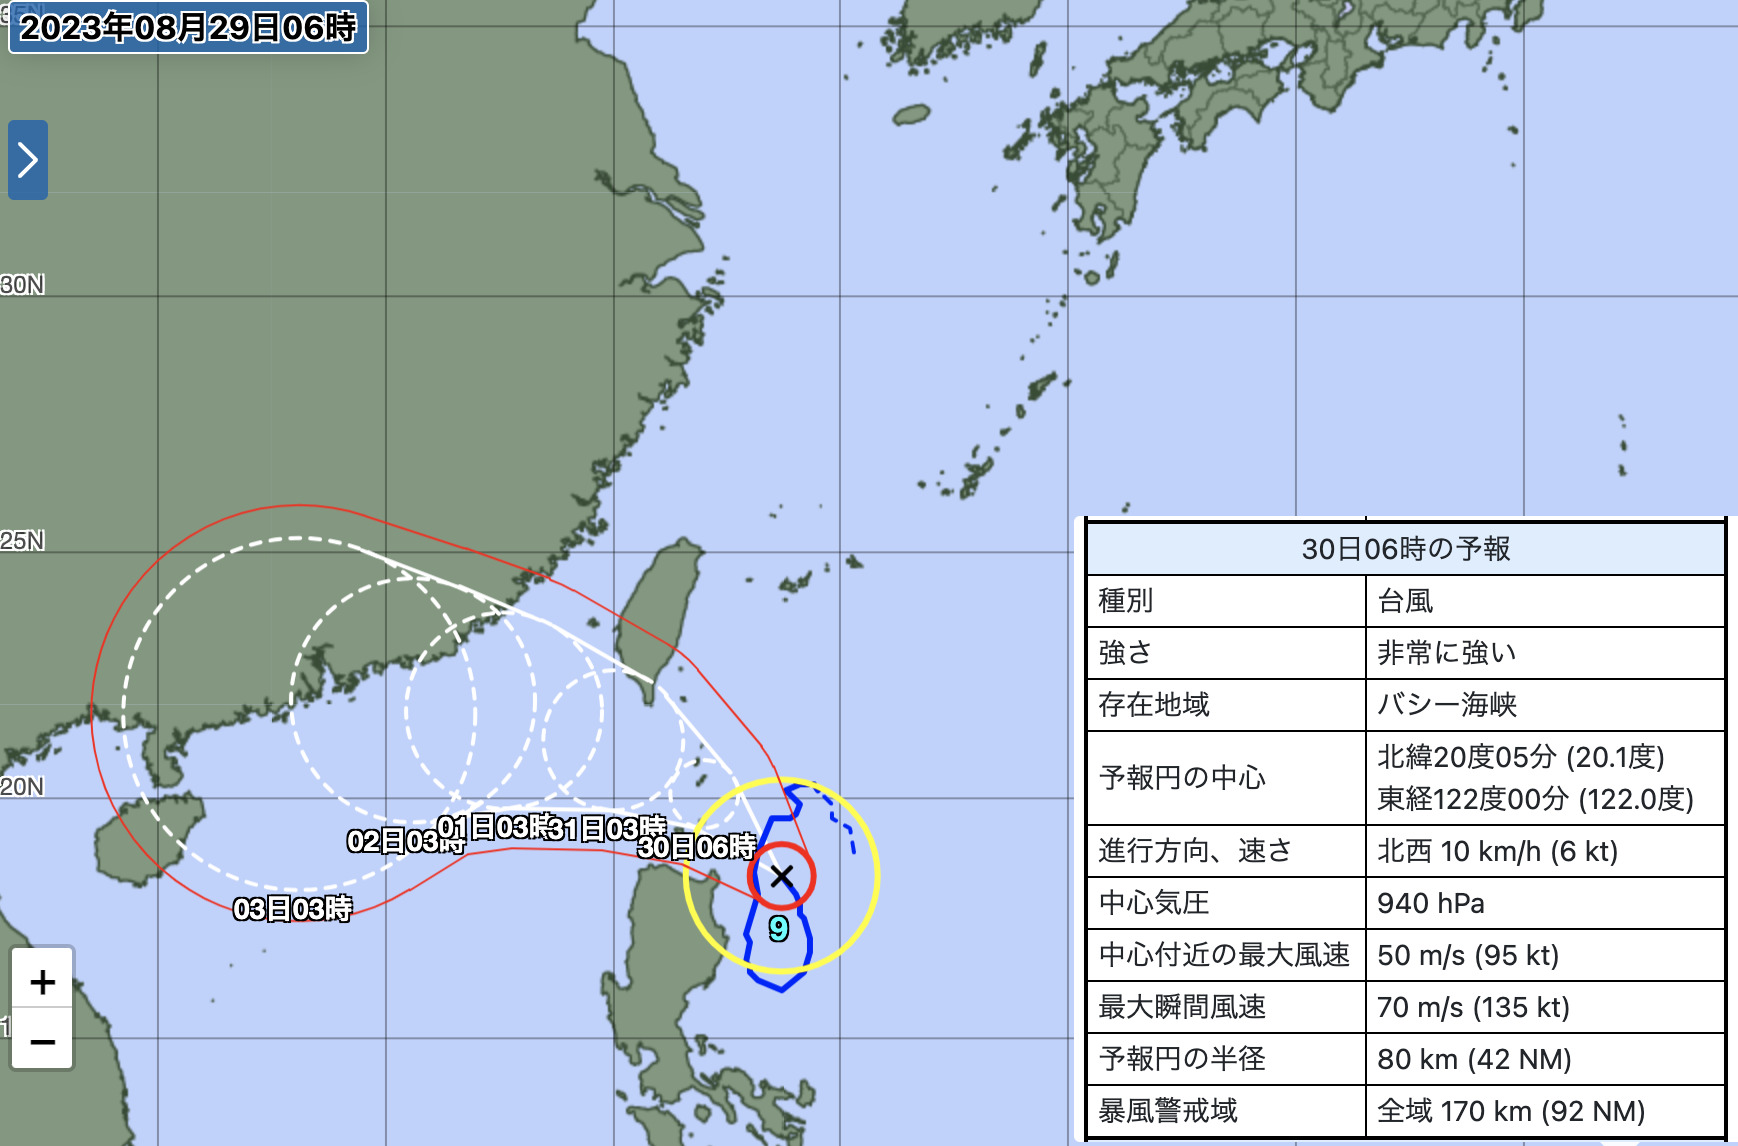 気象庁による台風9号の進路予測